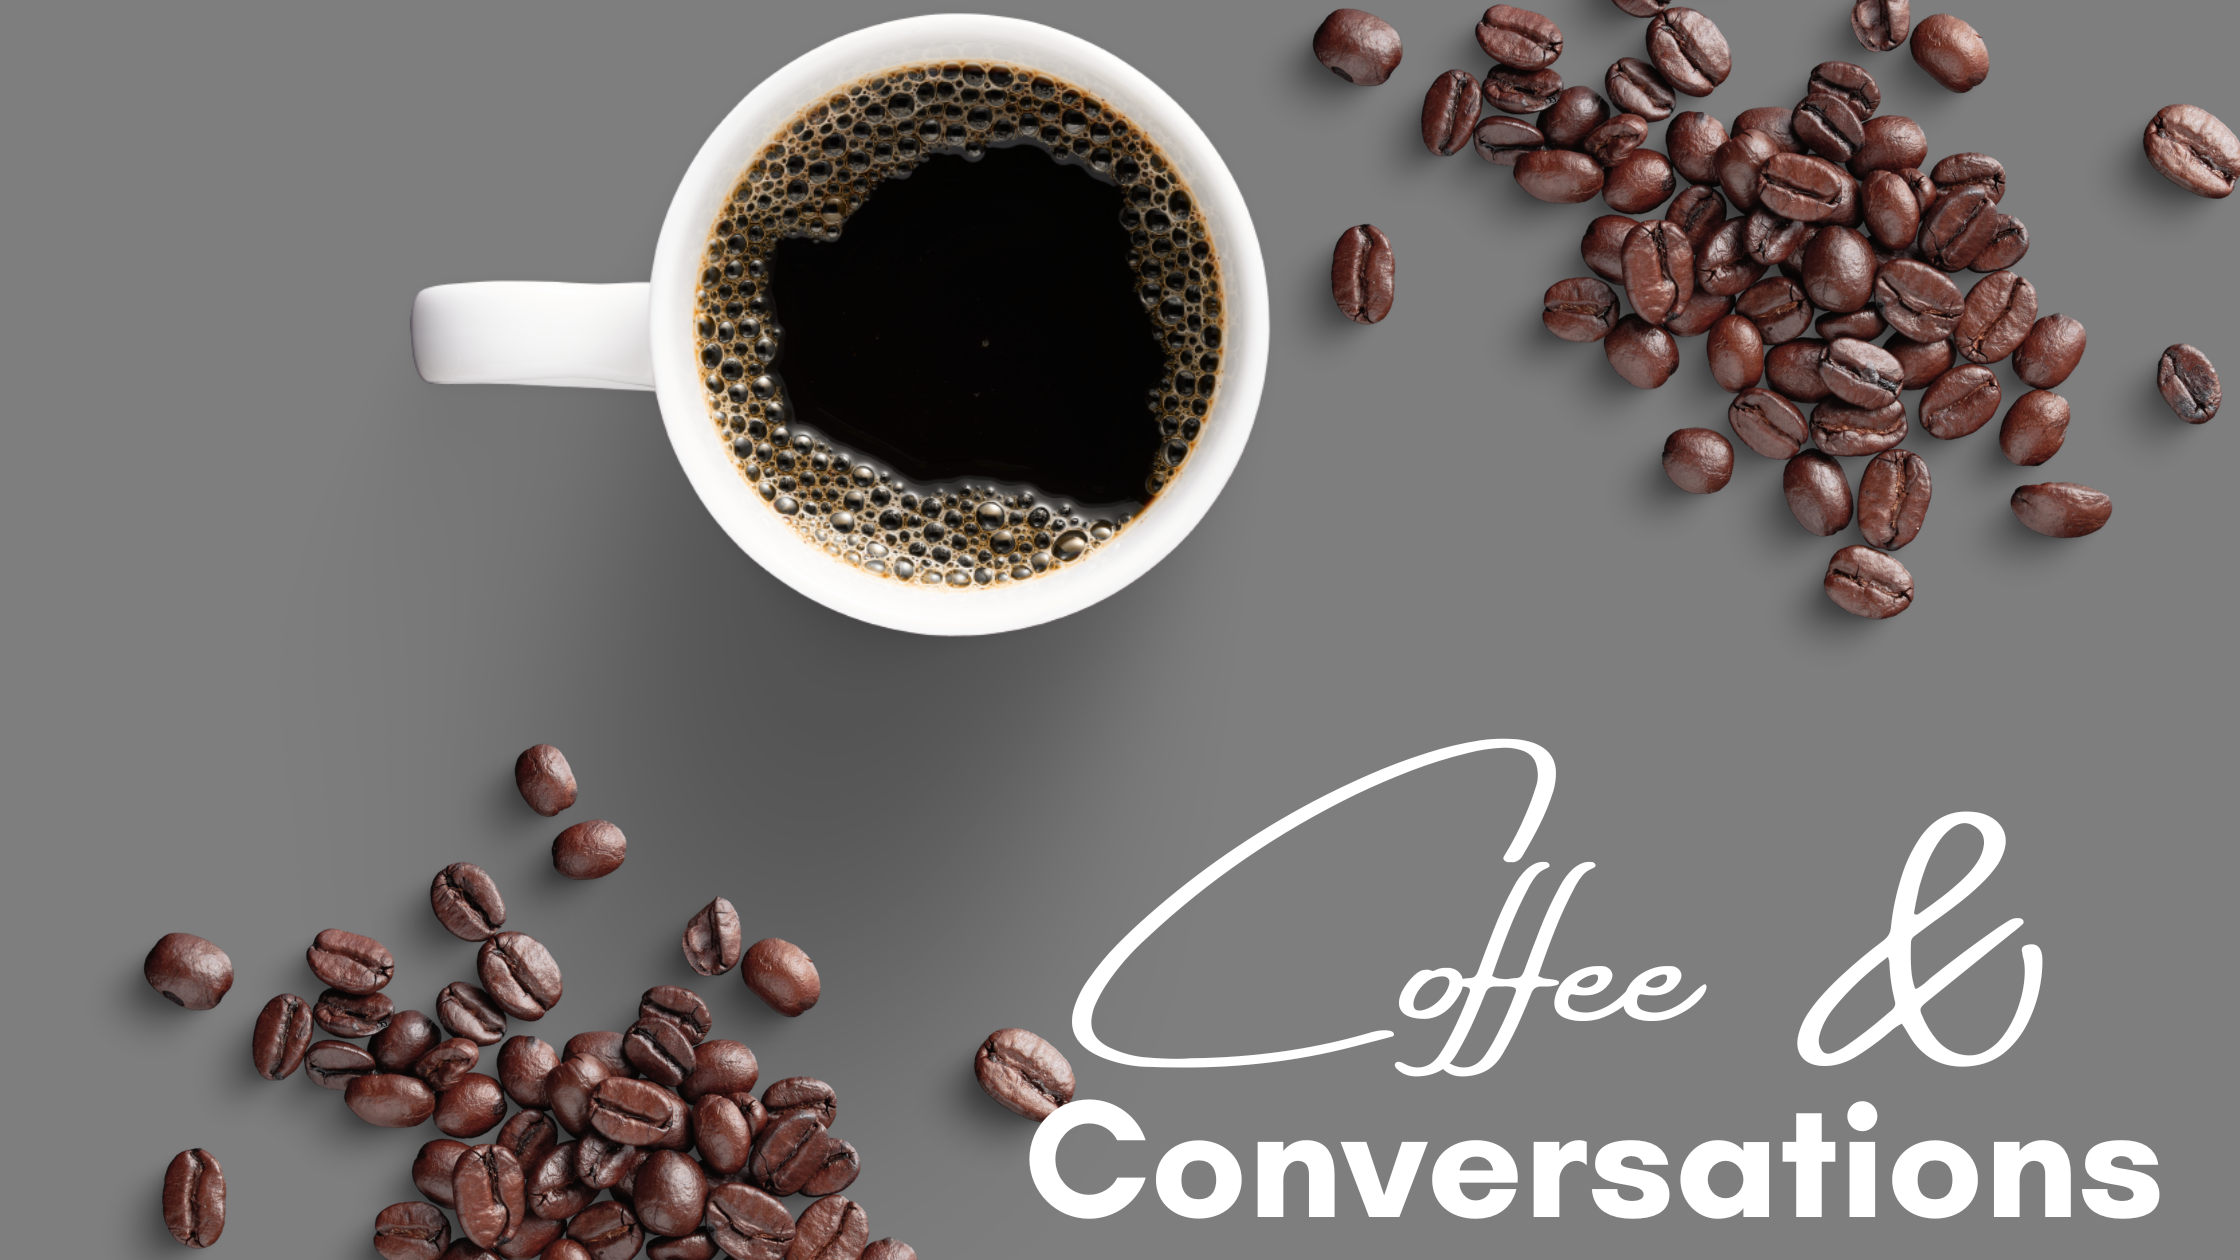 Coffee & ConversationsVirtual